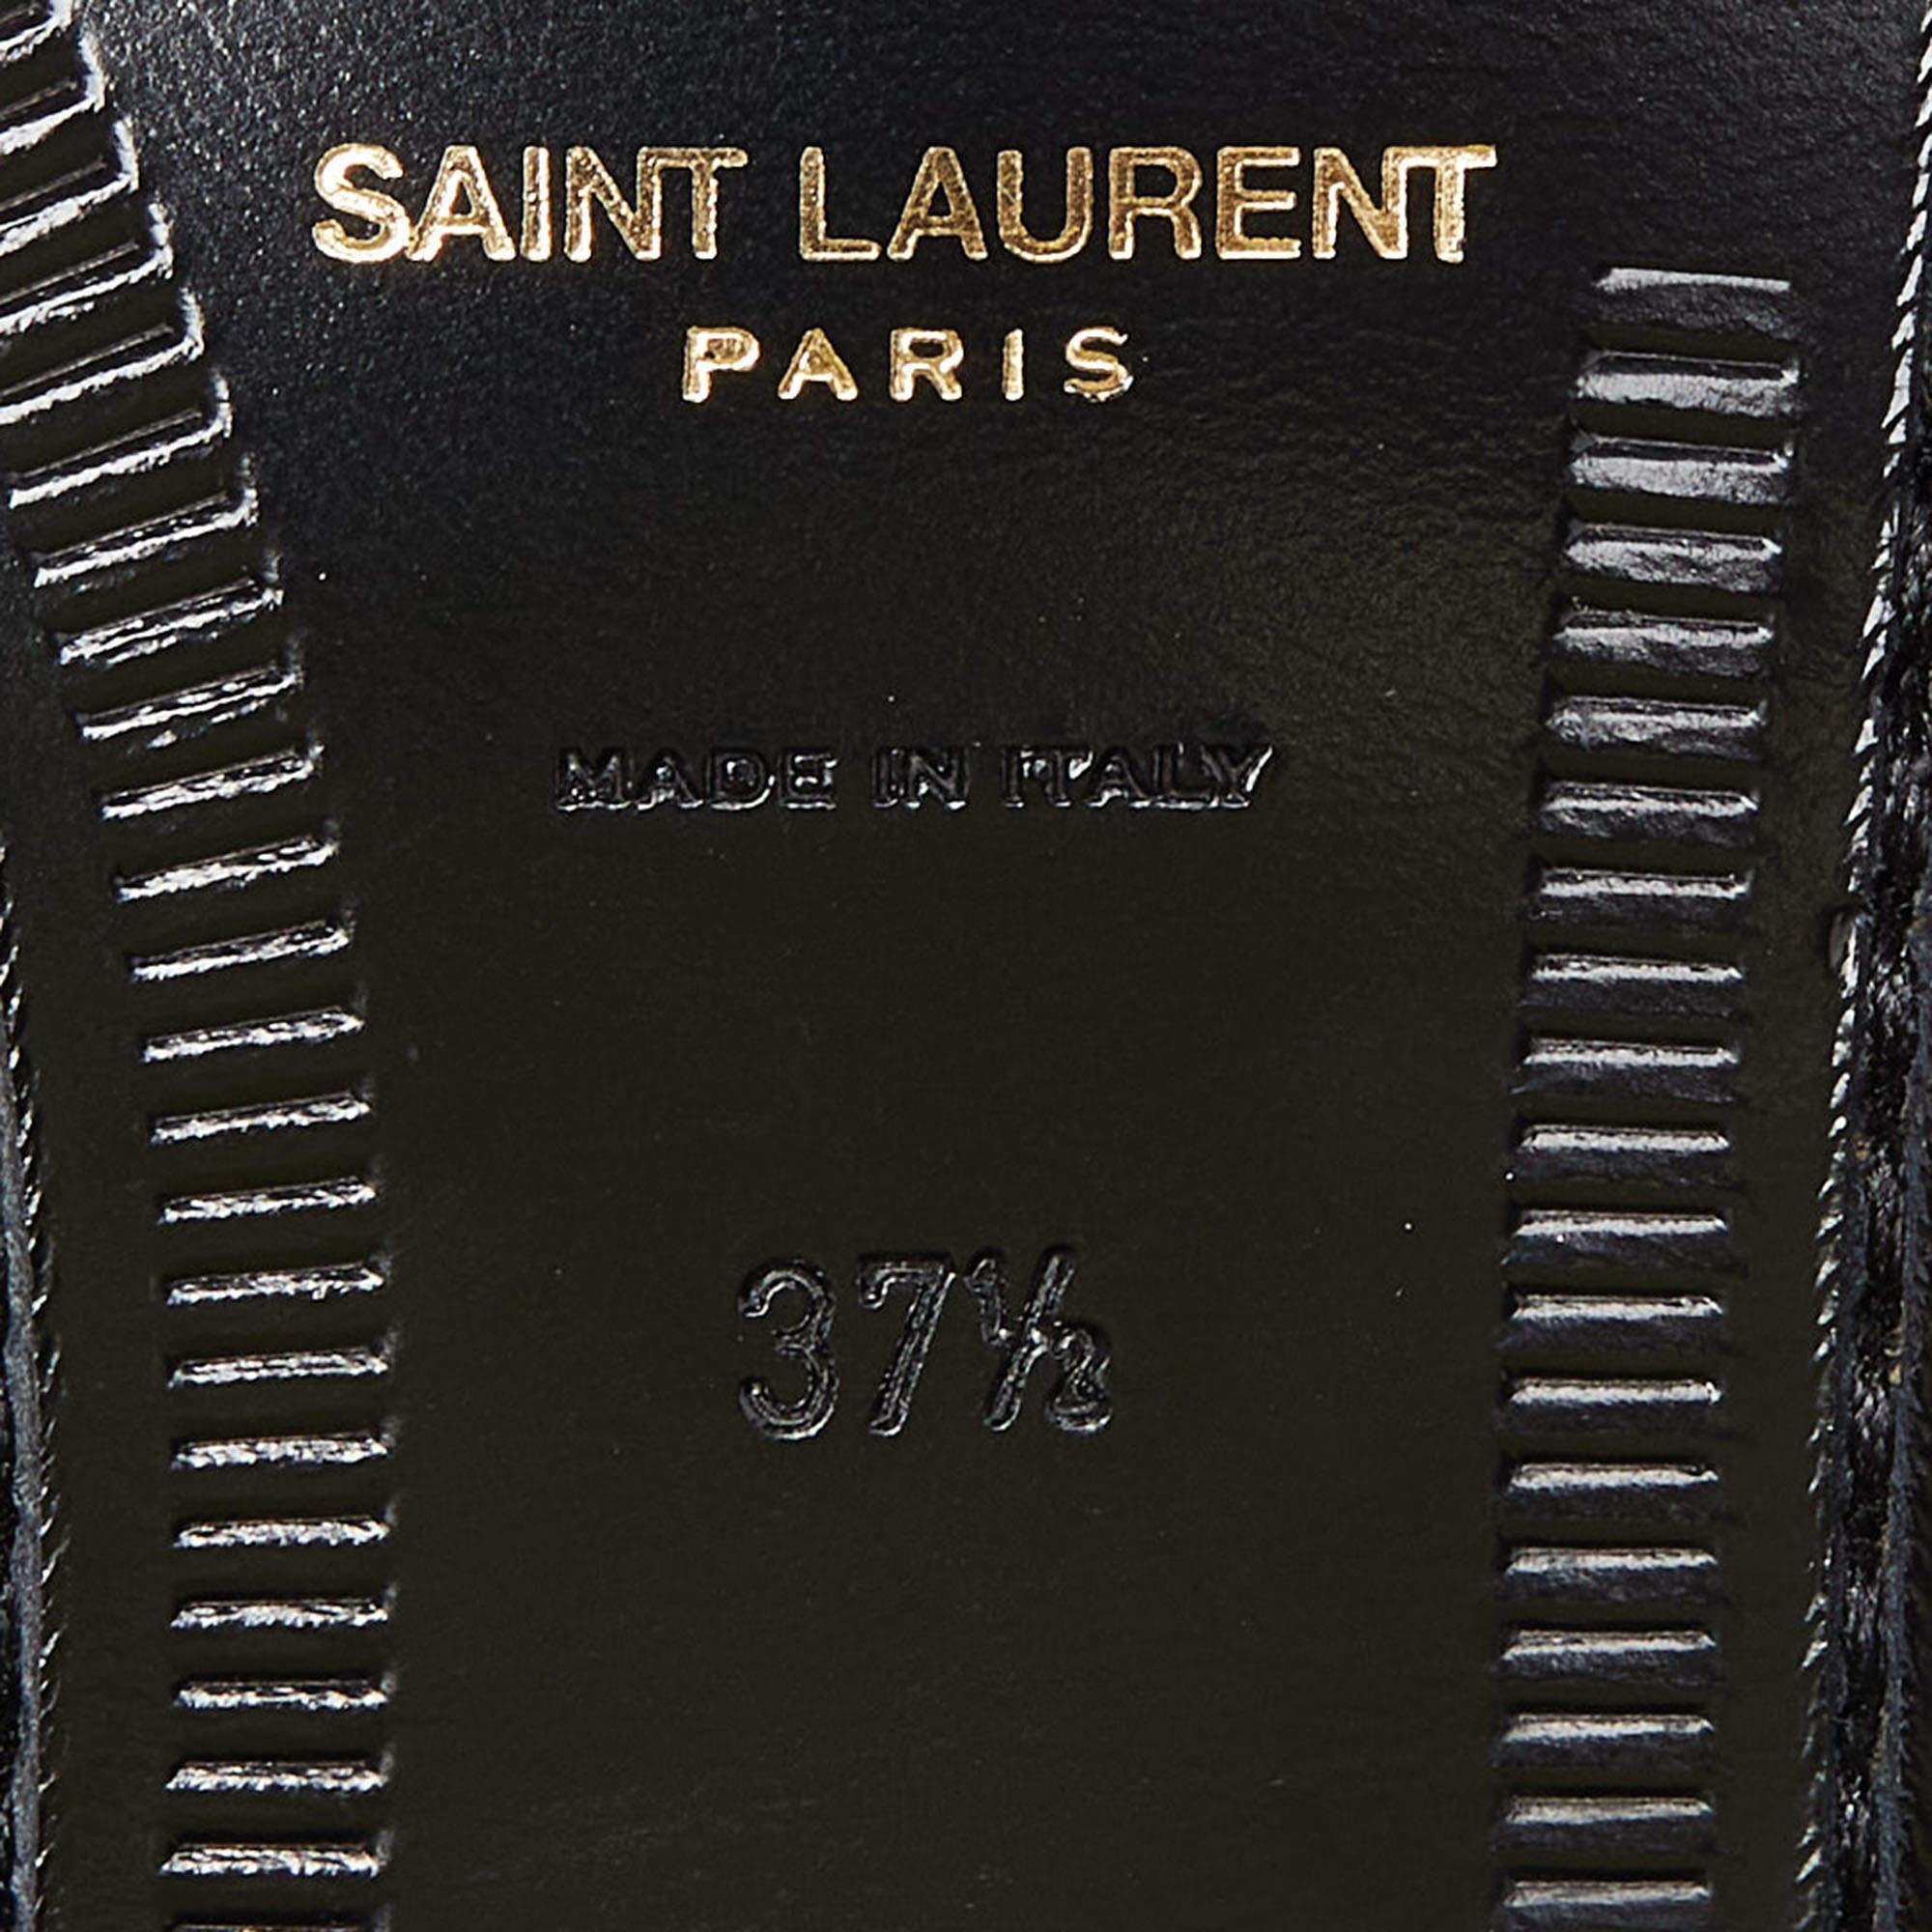 Saint Laurent Black Patent Leather Penny Le Loafers Size 37.5 3